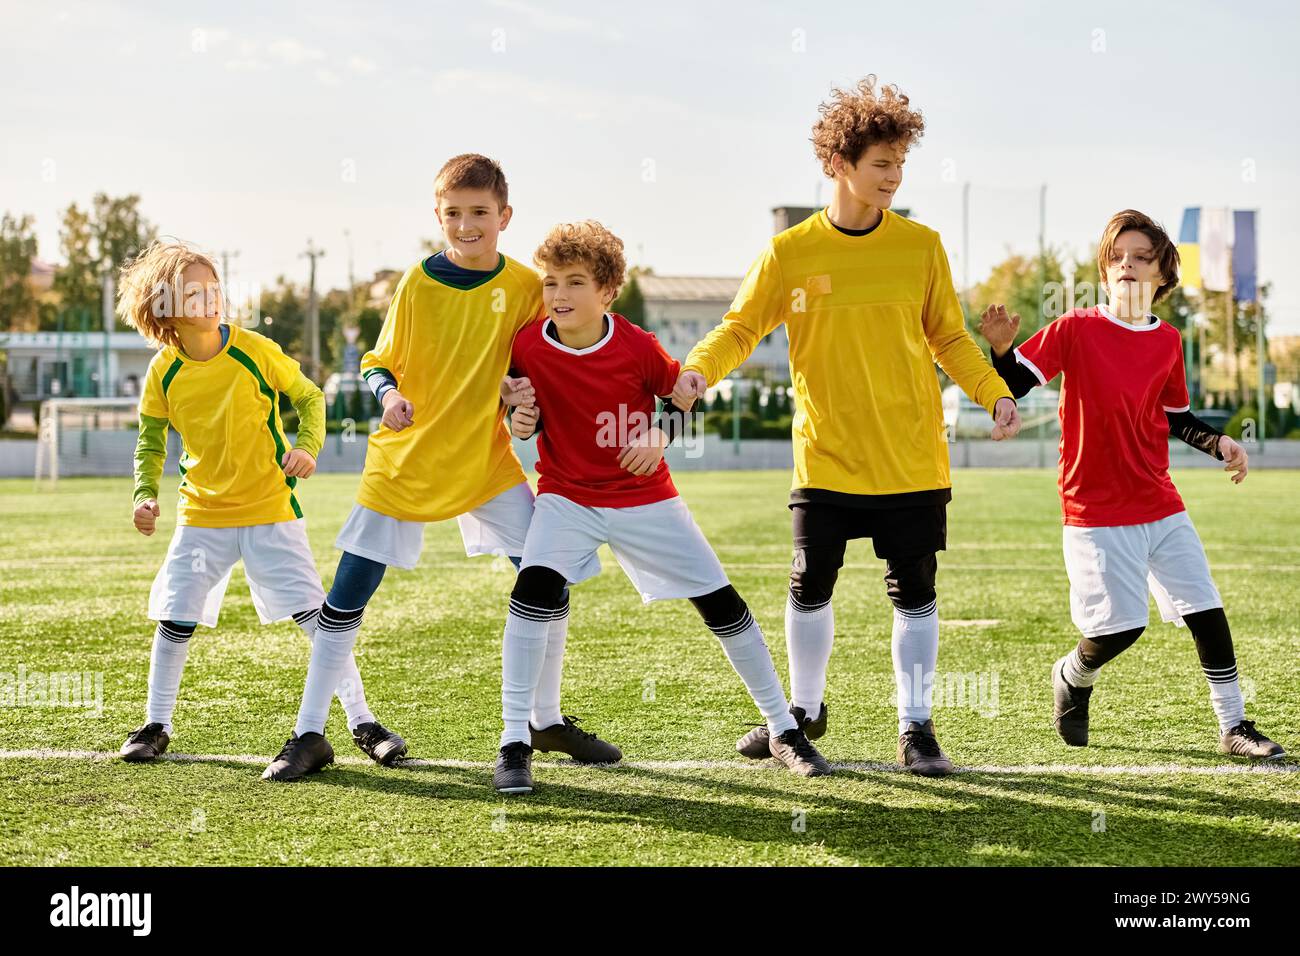 Eine Gruppe von Jungen steht stolz auf einem Fußballfeld und zeigt Einheit und Entschlossenheit. Sie werden in den warmen Glanz der untergehenden Sonne getaucht, mit Stockfoto